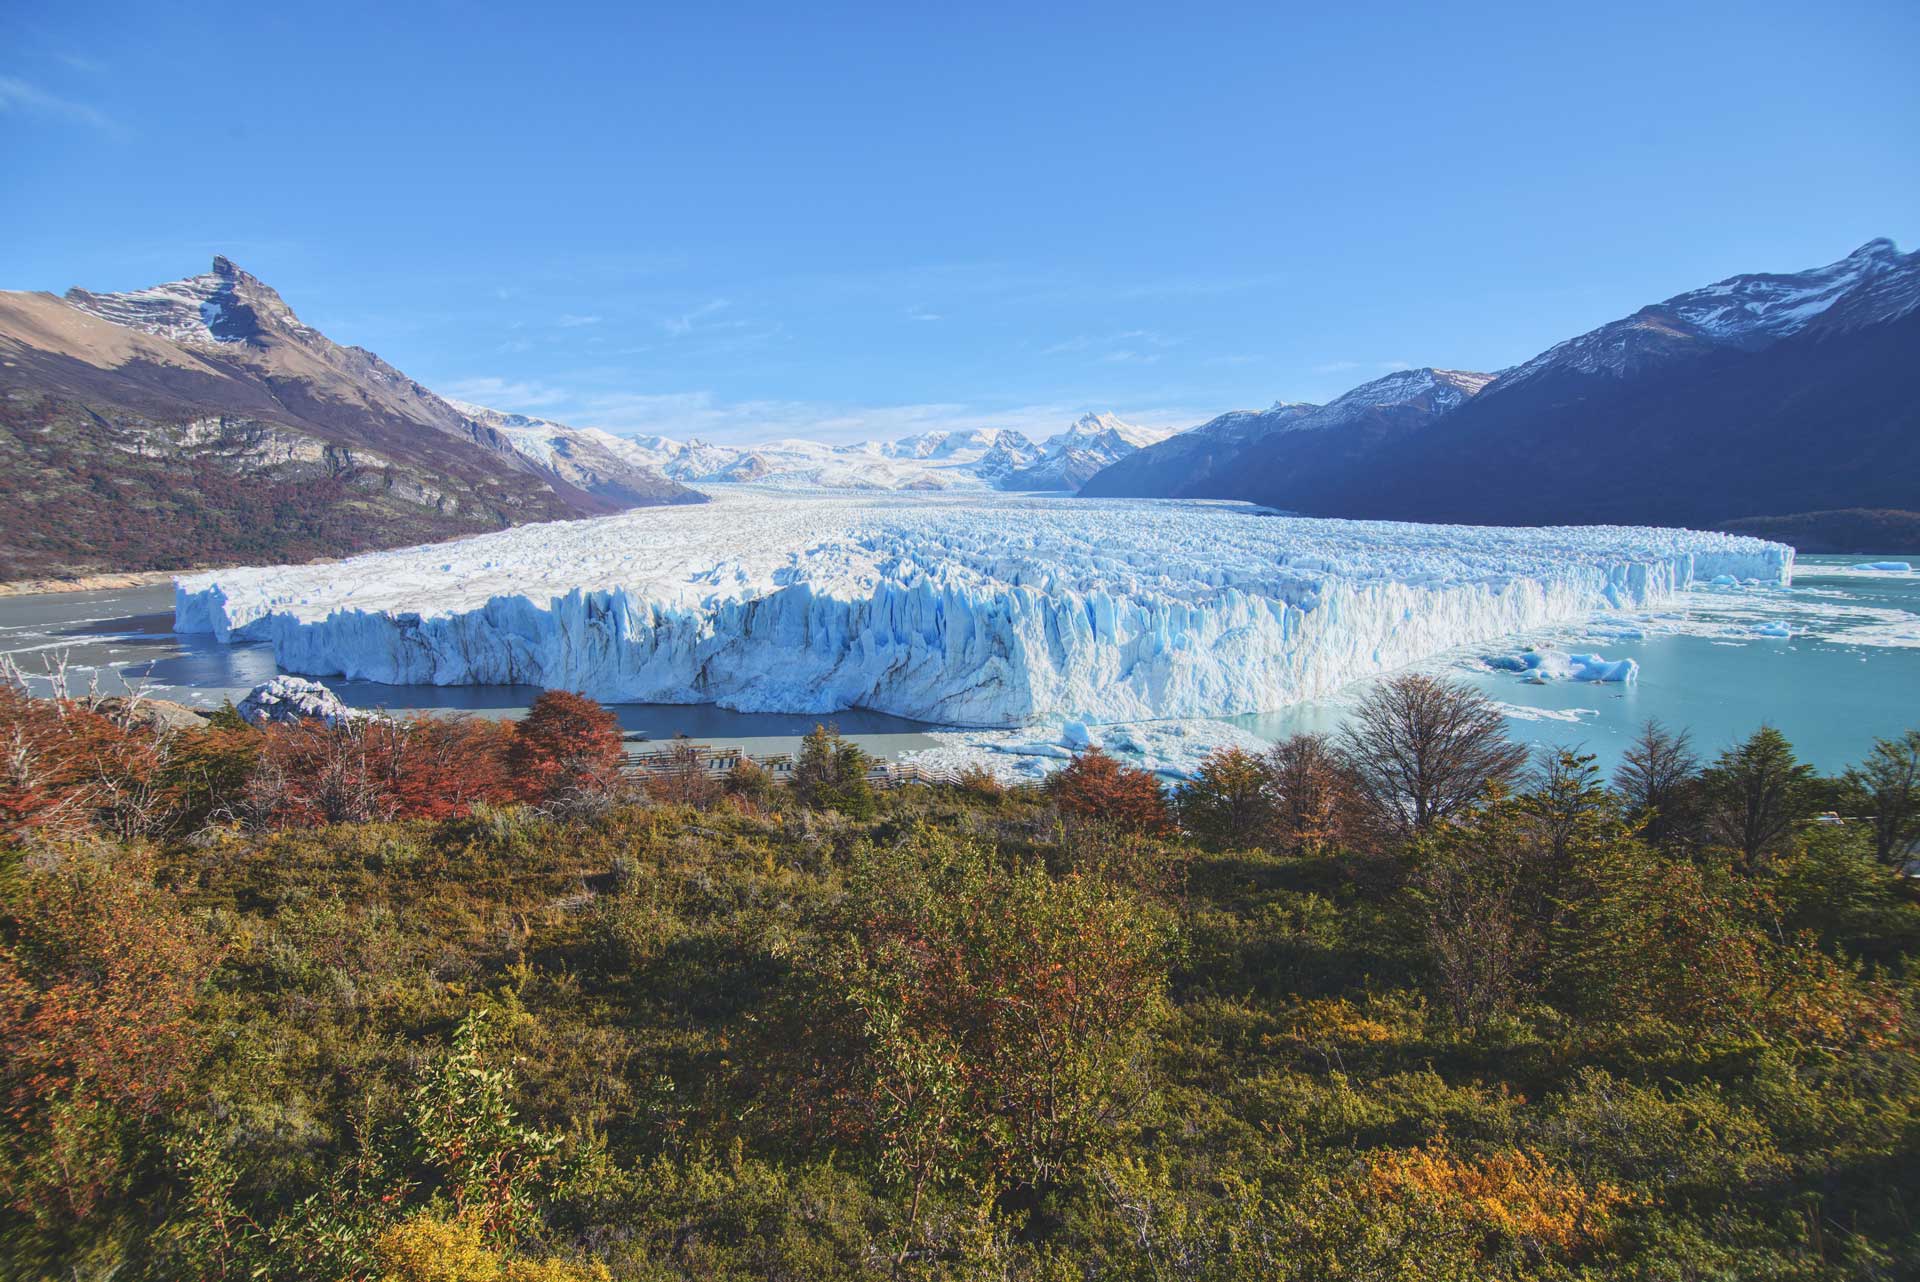 Perito Moreno glacier in Patagonia